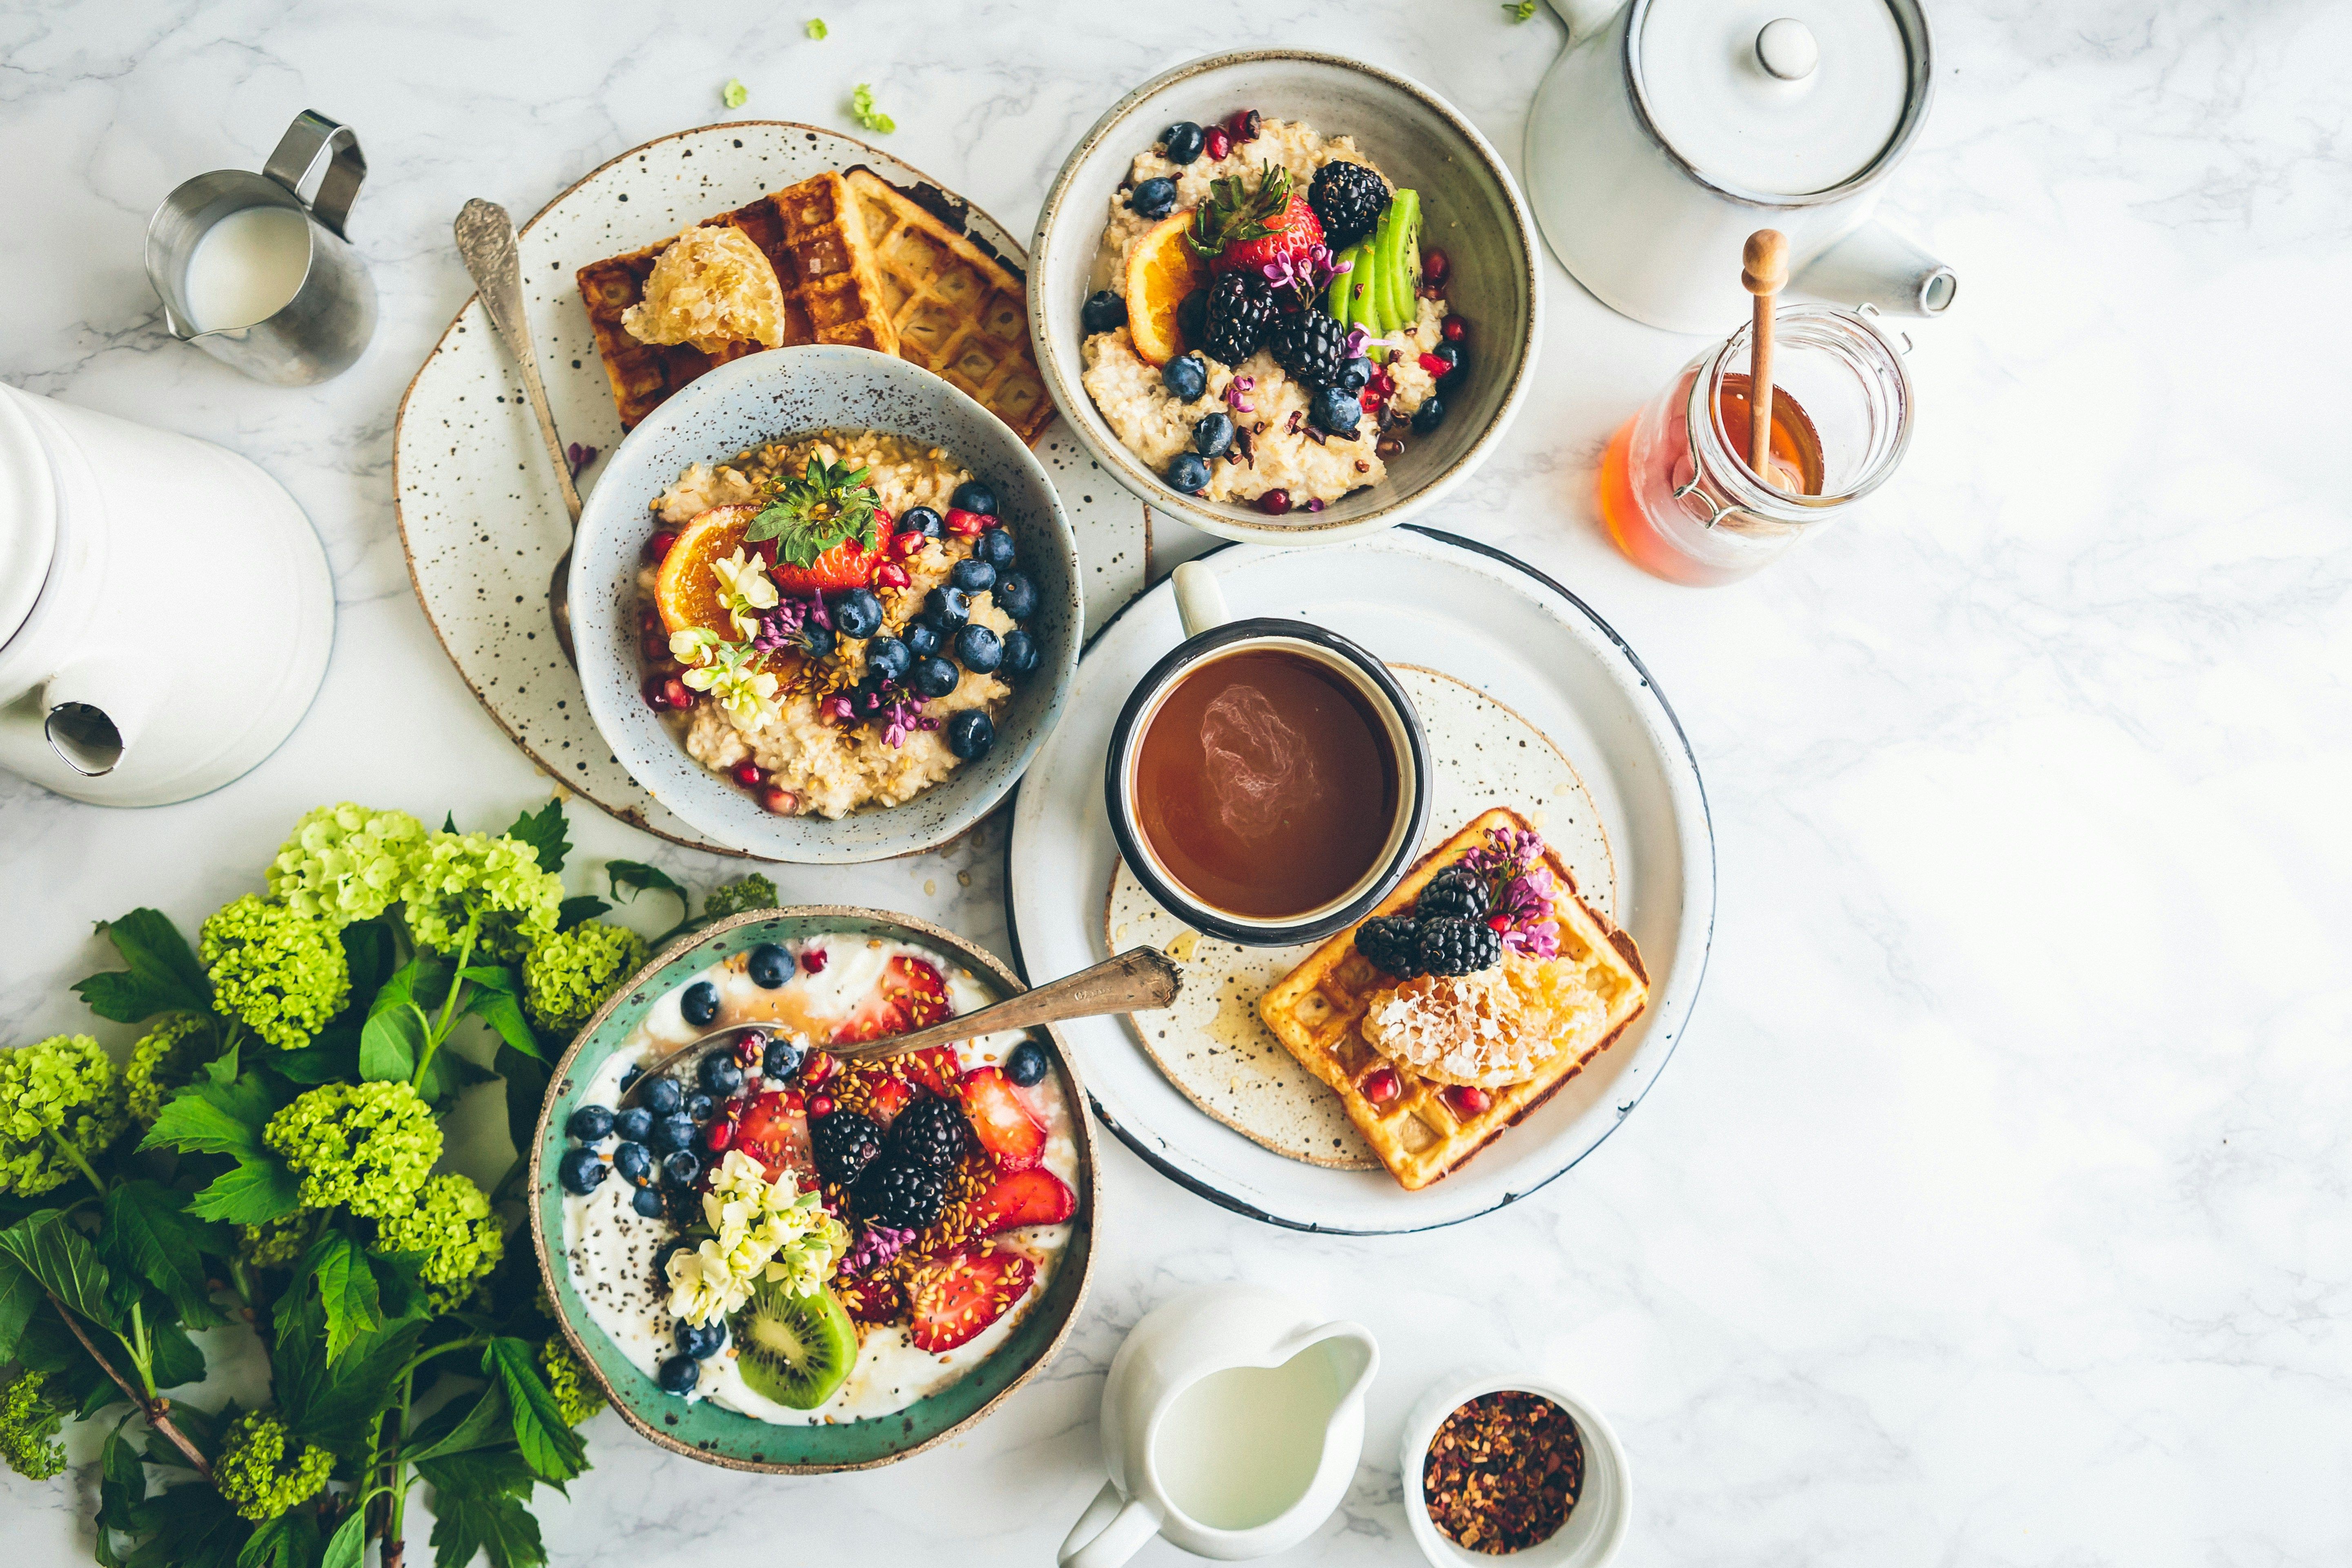 Психологический тест по картинке - что ваш любимый завтрак расскажет о вас